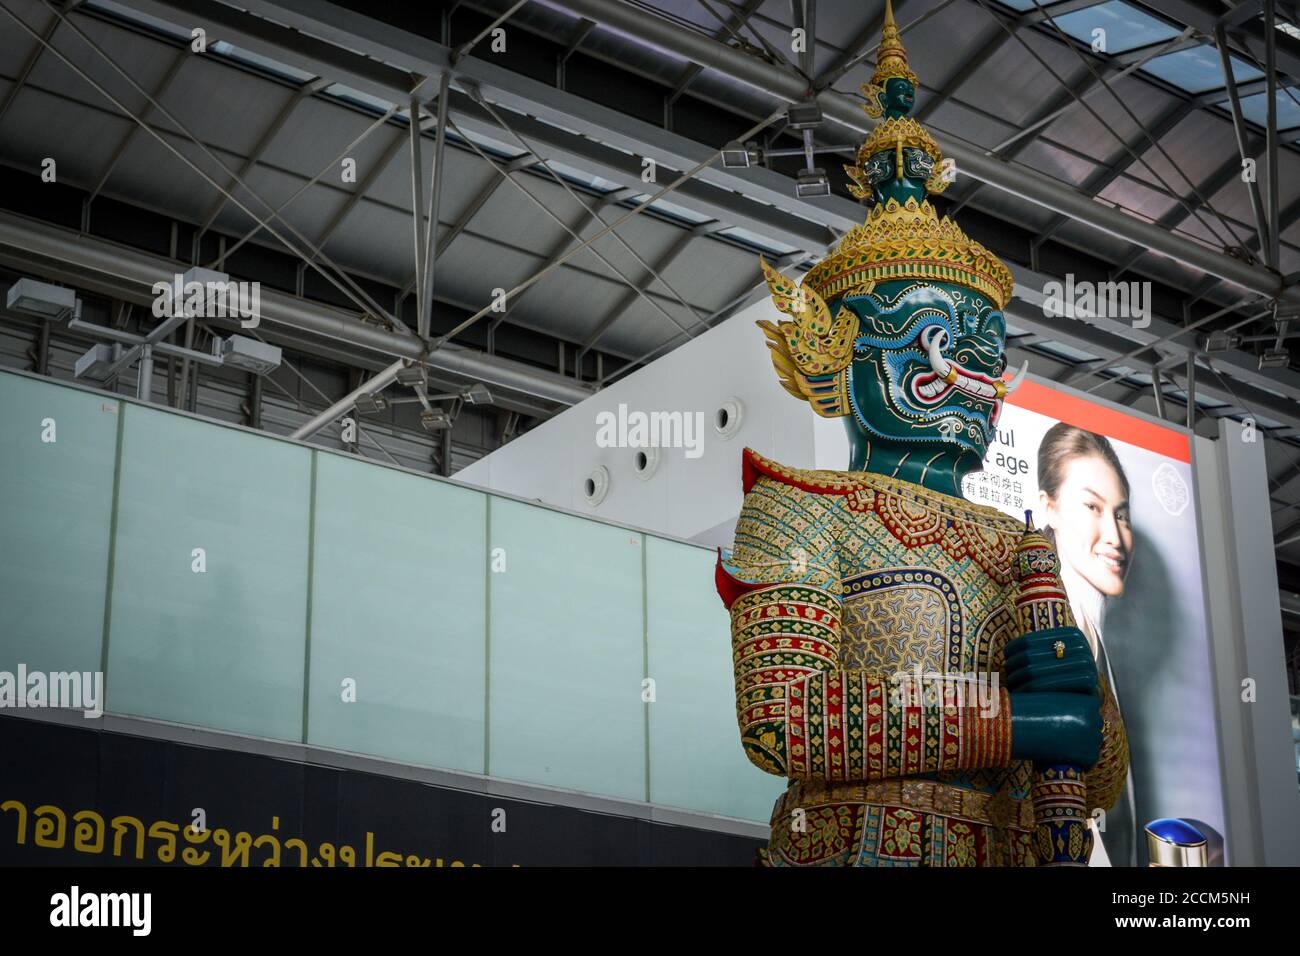 Bangkok, Thaïlande, Asie du Sud-est - la statue de Yaksha, l'une des statues géantes de la zone de départ de l'aéroport international de Suvarnabhumi. Banque D'Images